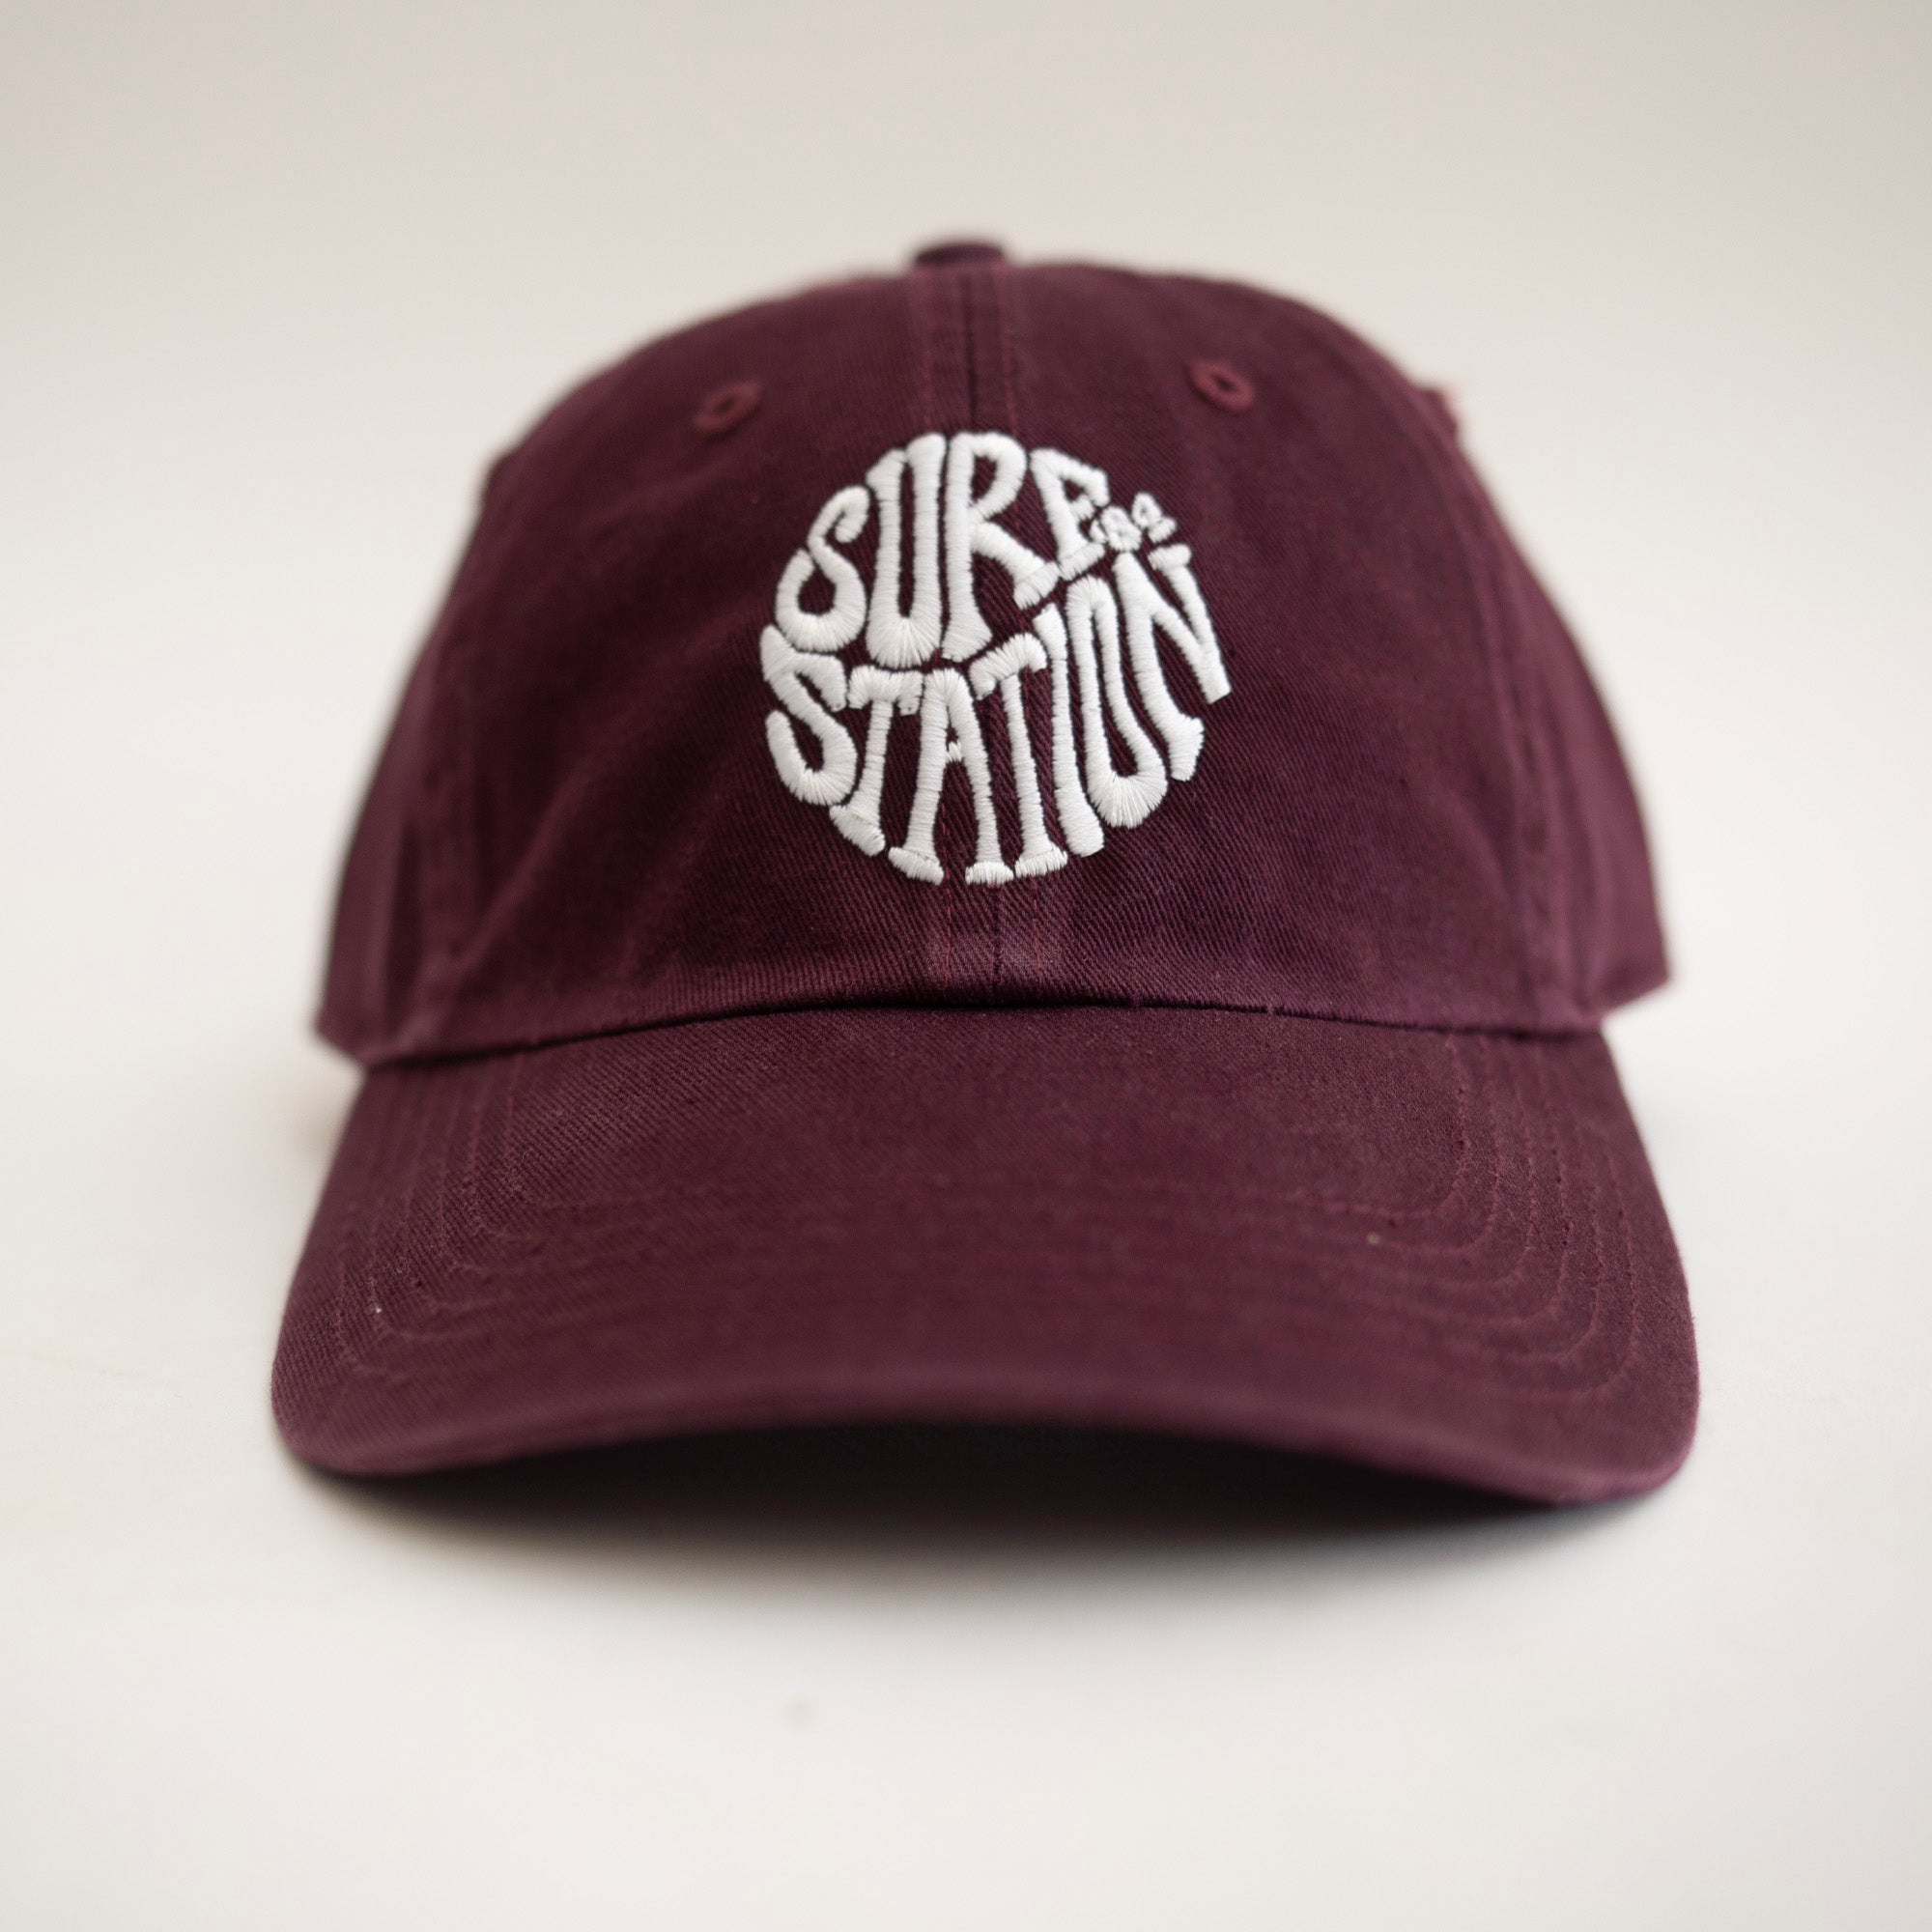 Surf Station '84 Worn Texture Men's Hat